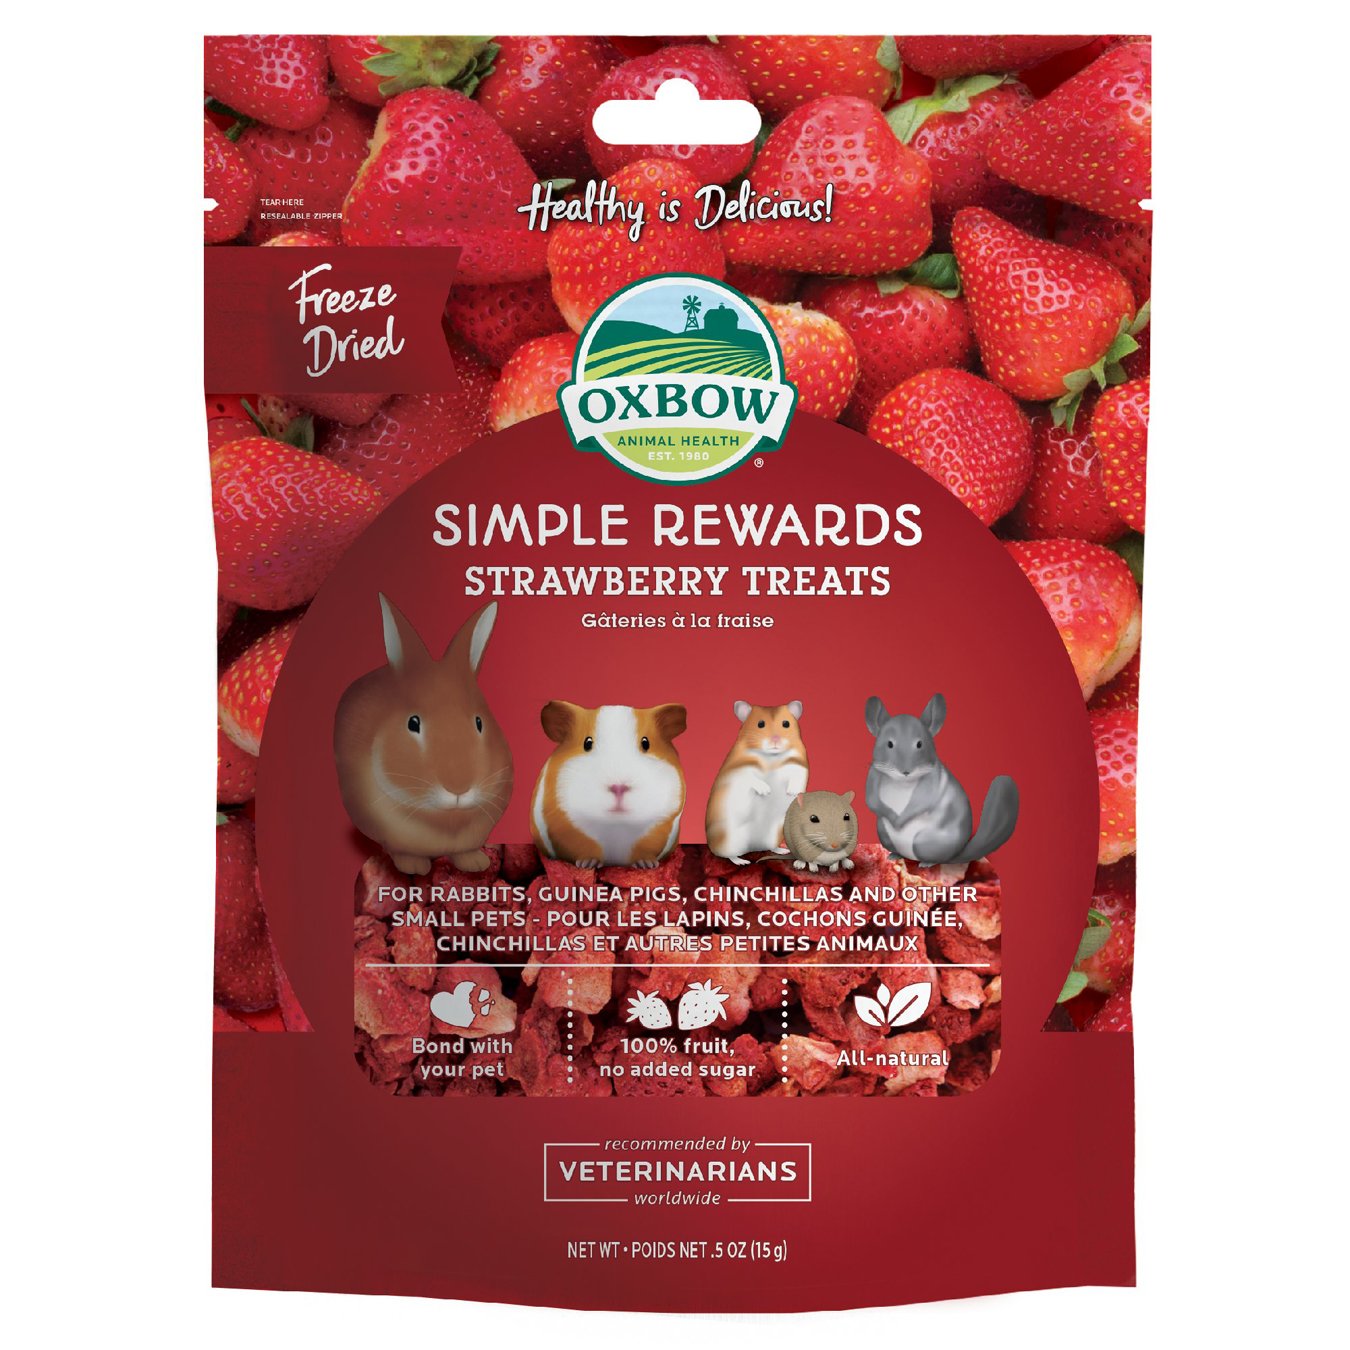 Oxbow Strawberry Treat Simple Rewards 15g